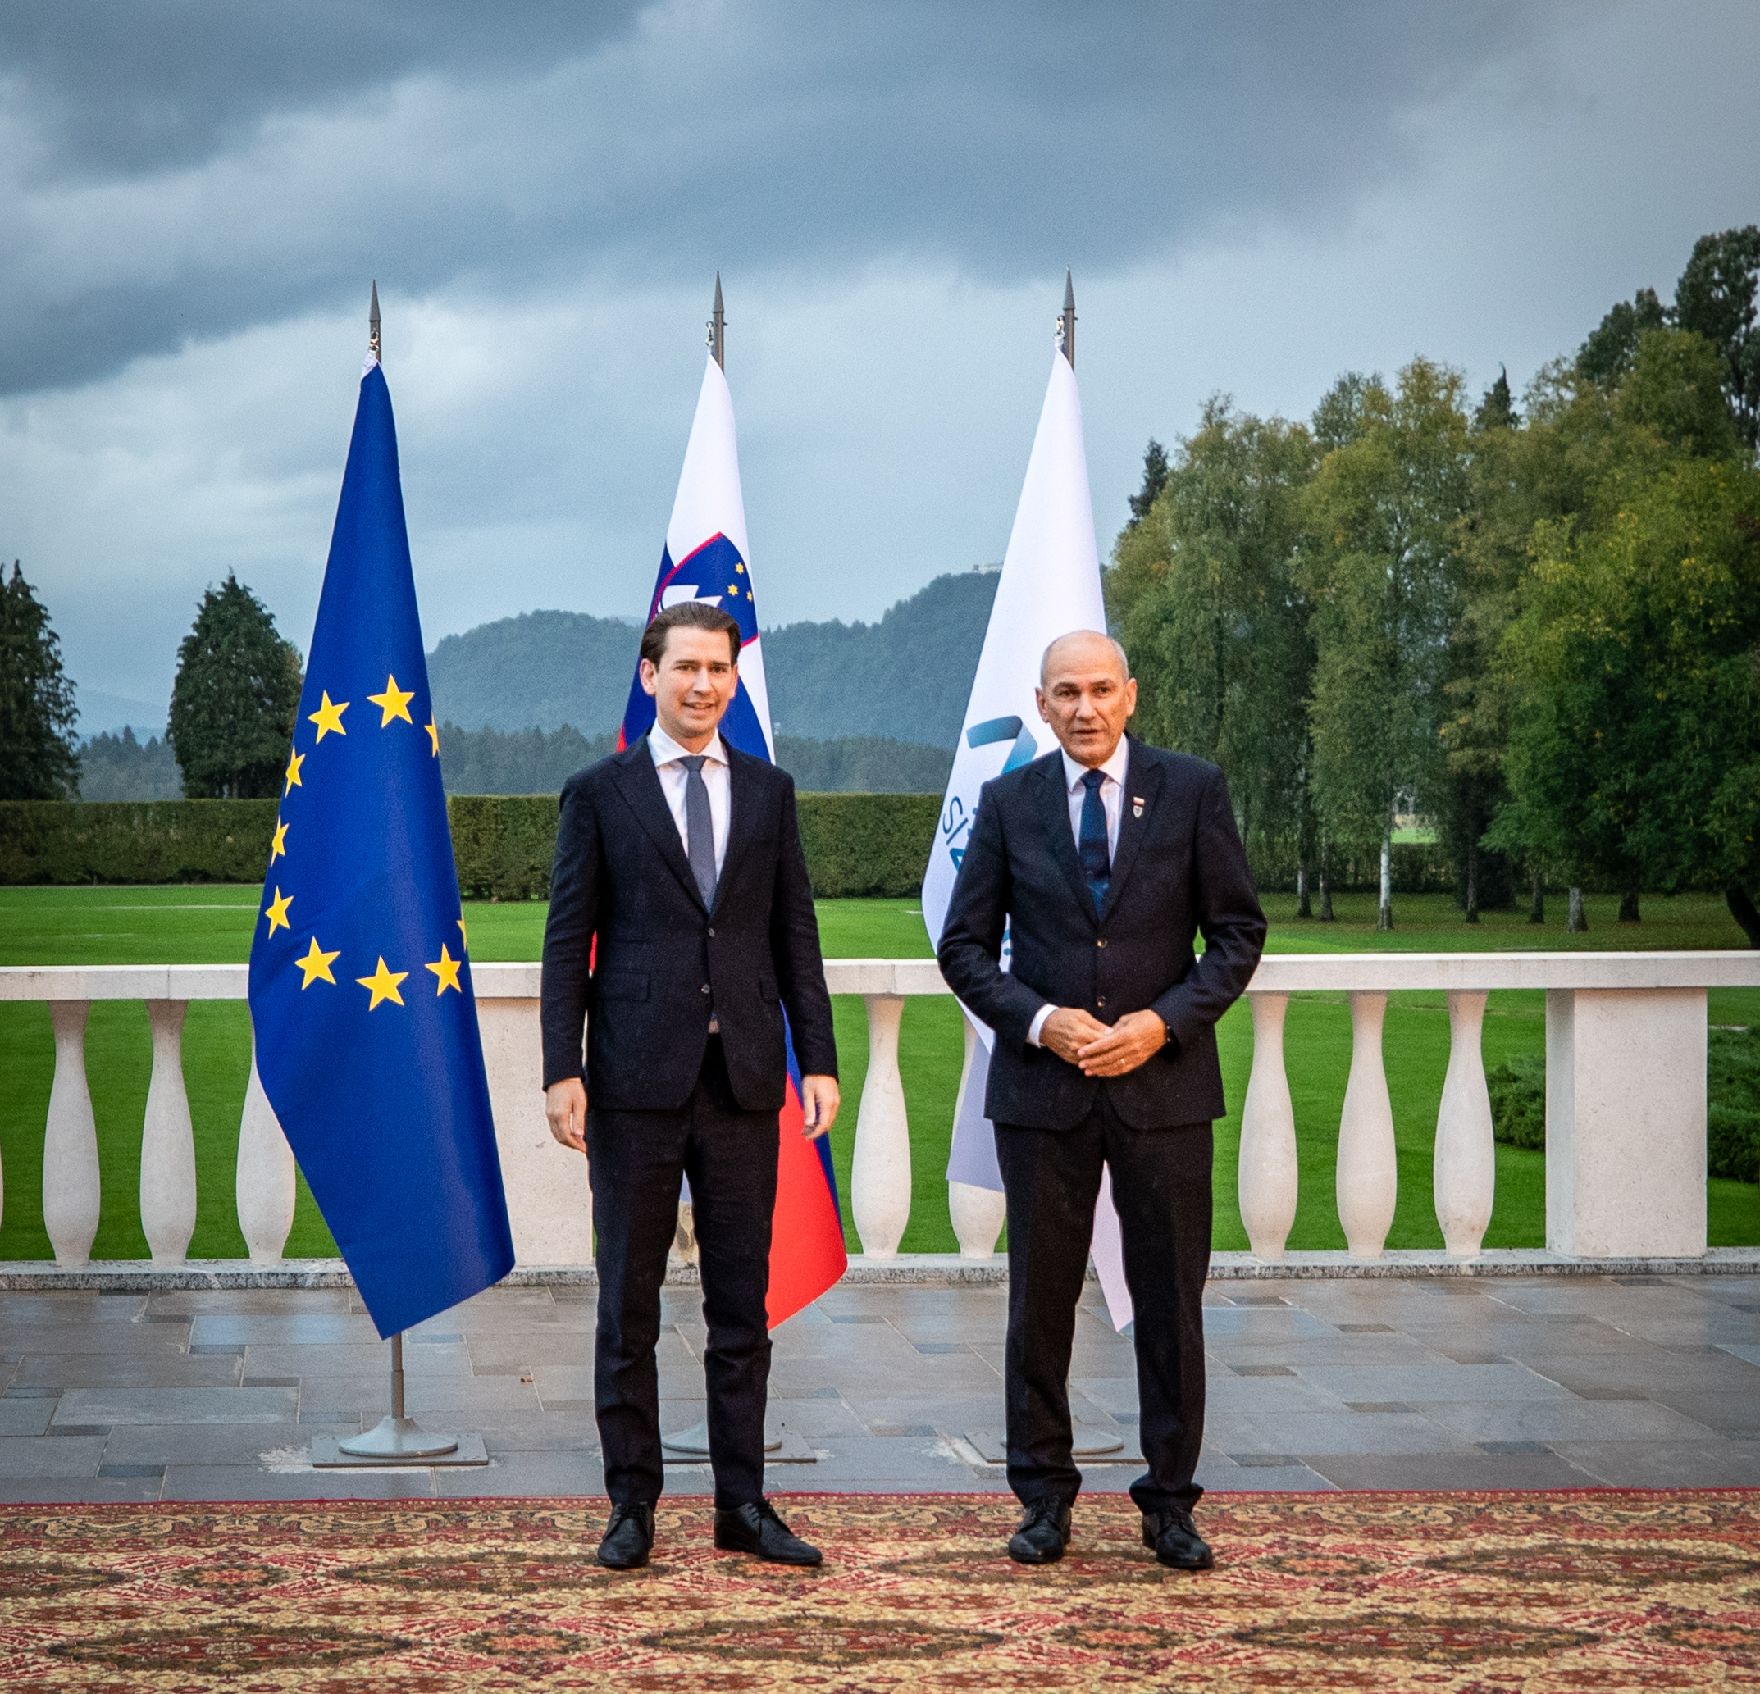 Am 5. Oktober 2021 nahm Bundeskanzler Sebastian Kurz (l.) am informellen Europäischen Rat in Slowenien teil. Im Bild mit dem Ministerpräsidenten von Slowenien Janez Janša (r.).